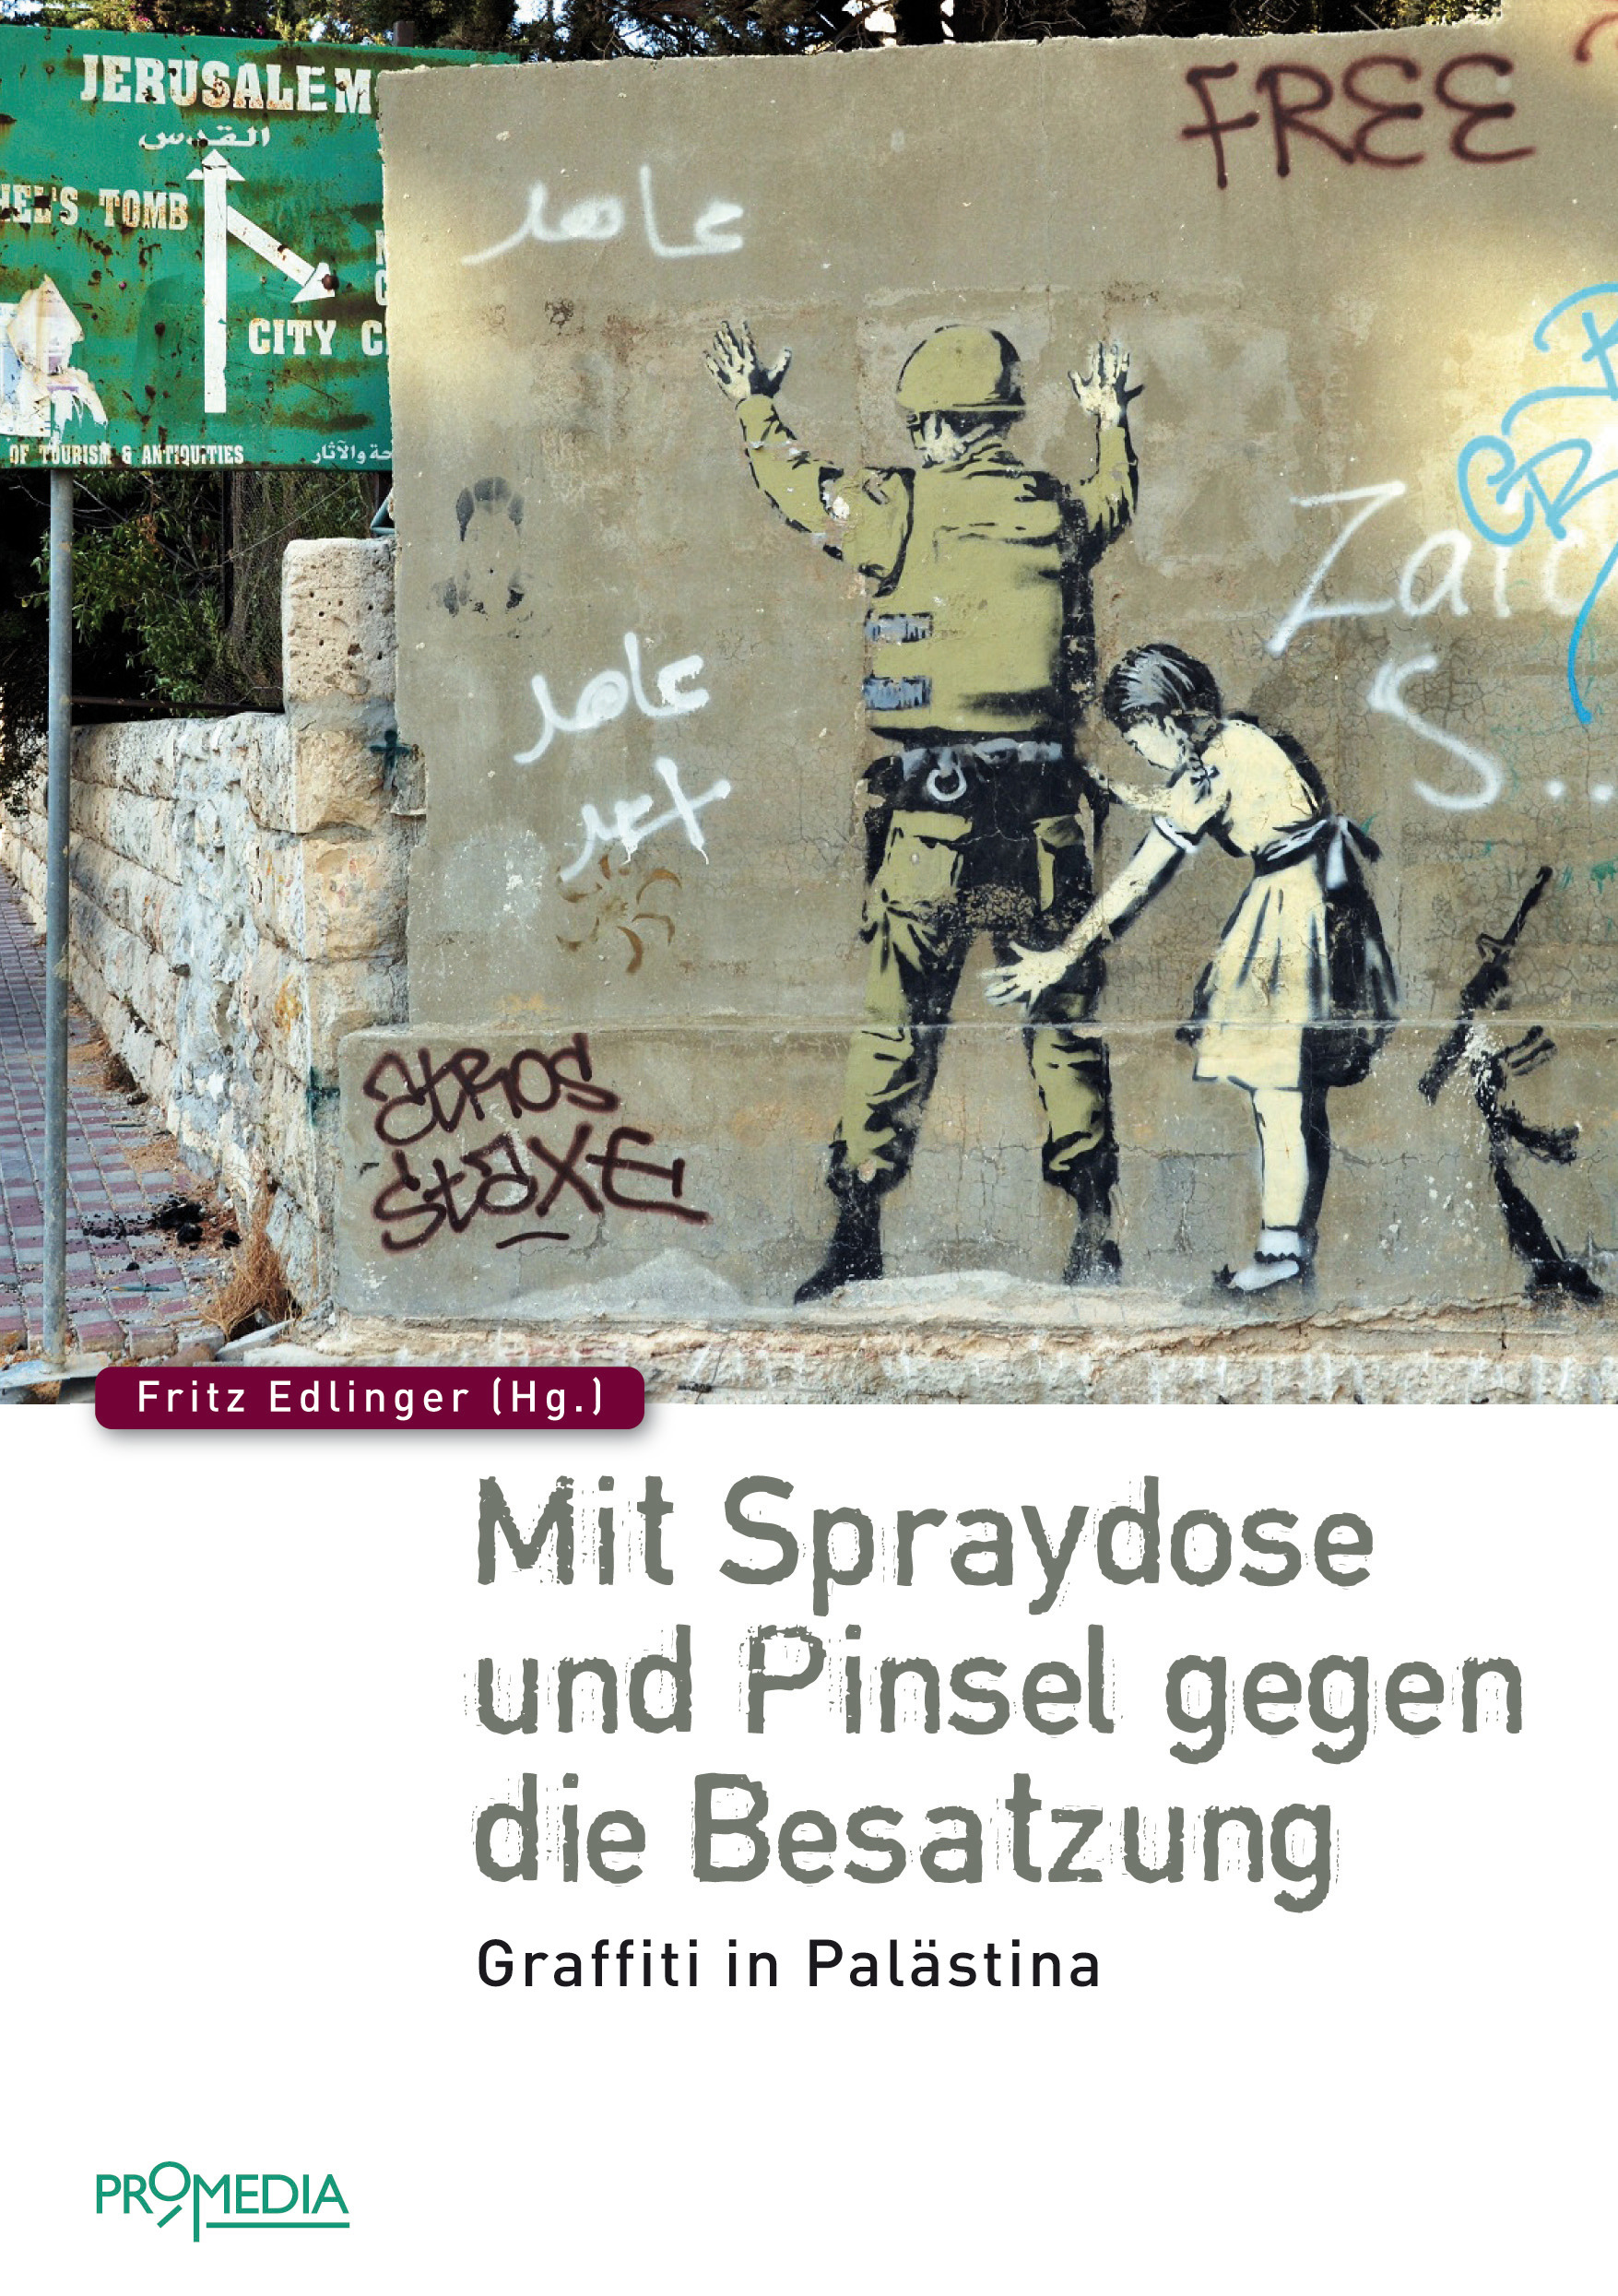 [Cover] Mit Spraydose und Pinsel gegen die Besatzung